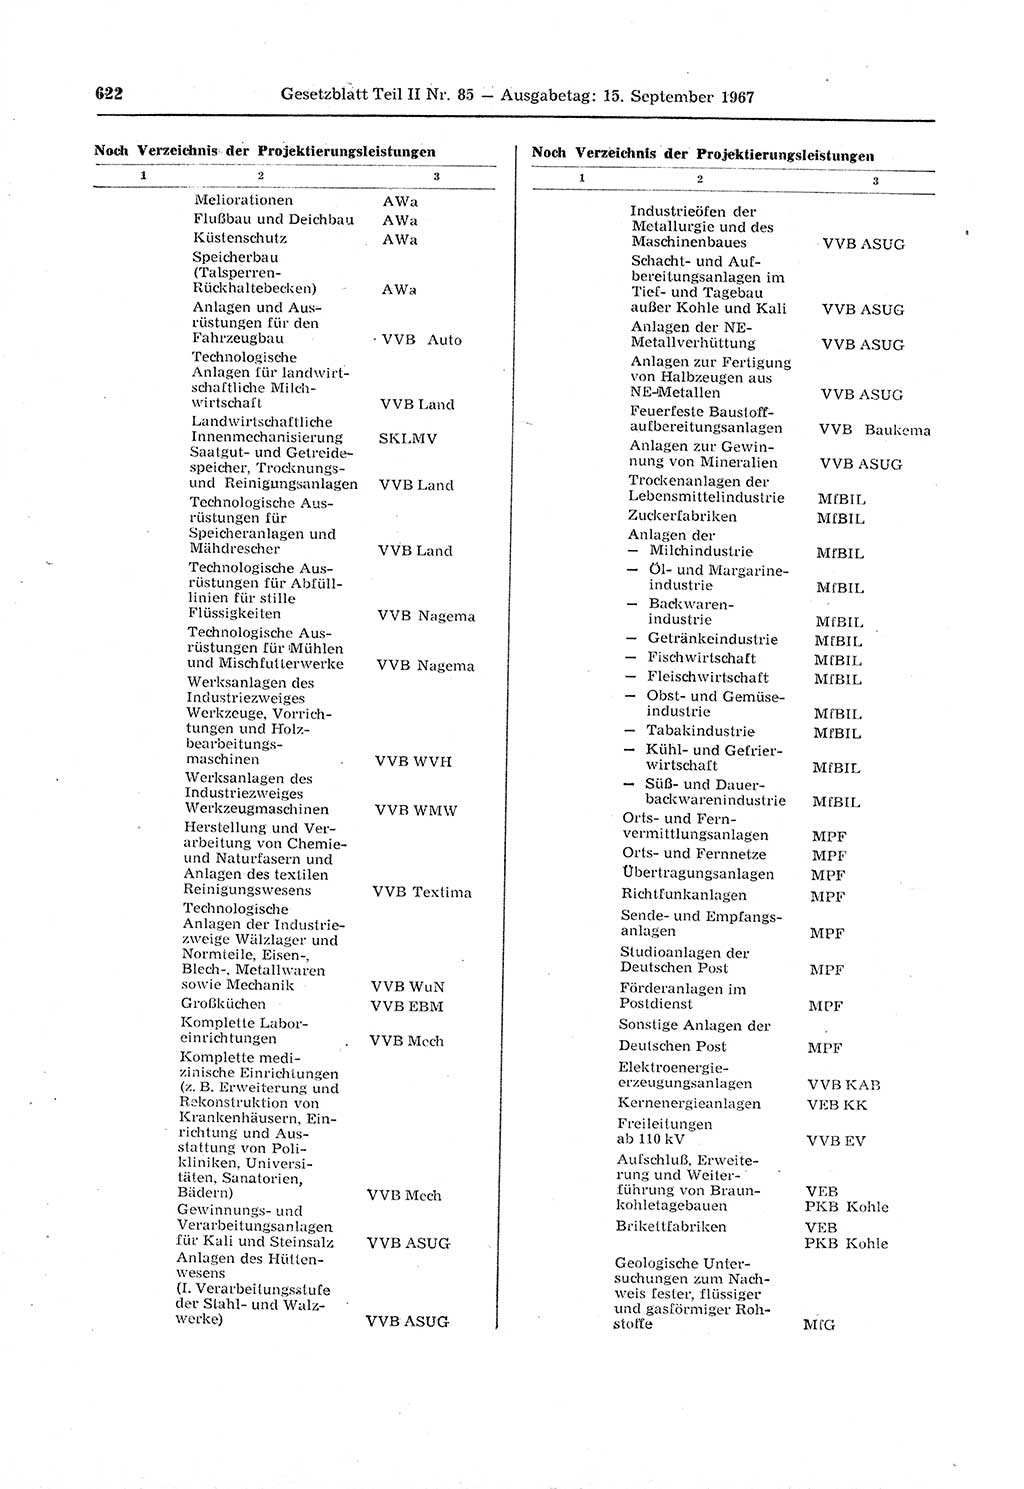 Gesetzblatt (GBl.) der Deutschen Demokratischen Republik (DDR) Teil ⅠⅠ 1967, Seite 622 (GBl. DDR ⅠⅠ 1967, S. 622)